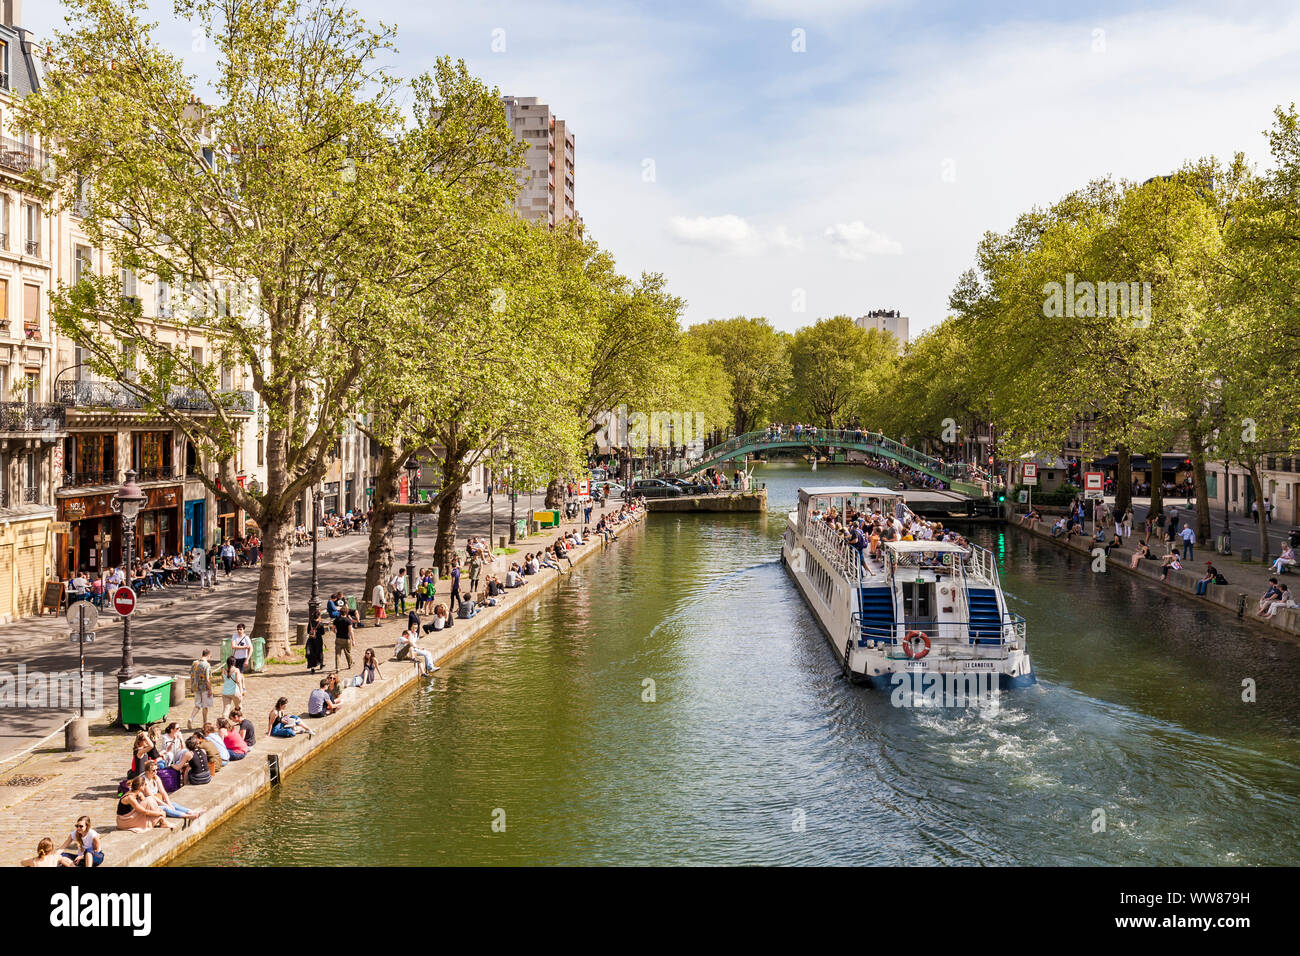 Francia, París, centro de la ciudad, el Canal Saint Martin, canal de envío, excursión, excursión en barco Foto de stock